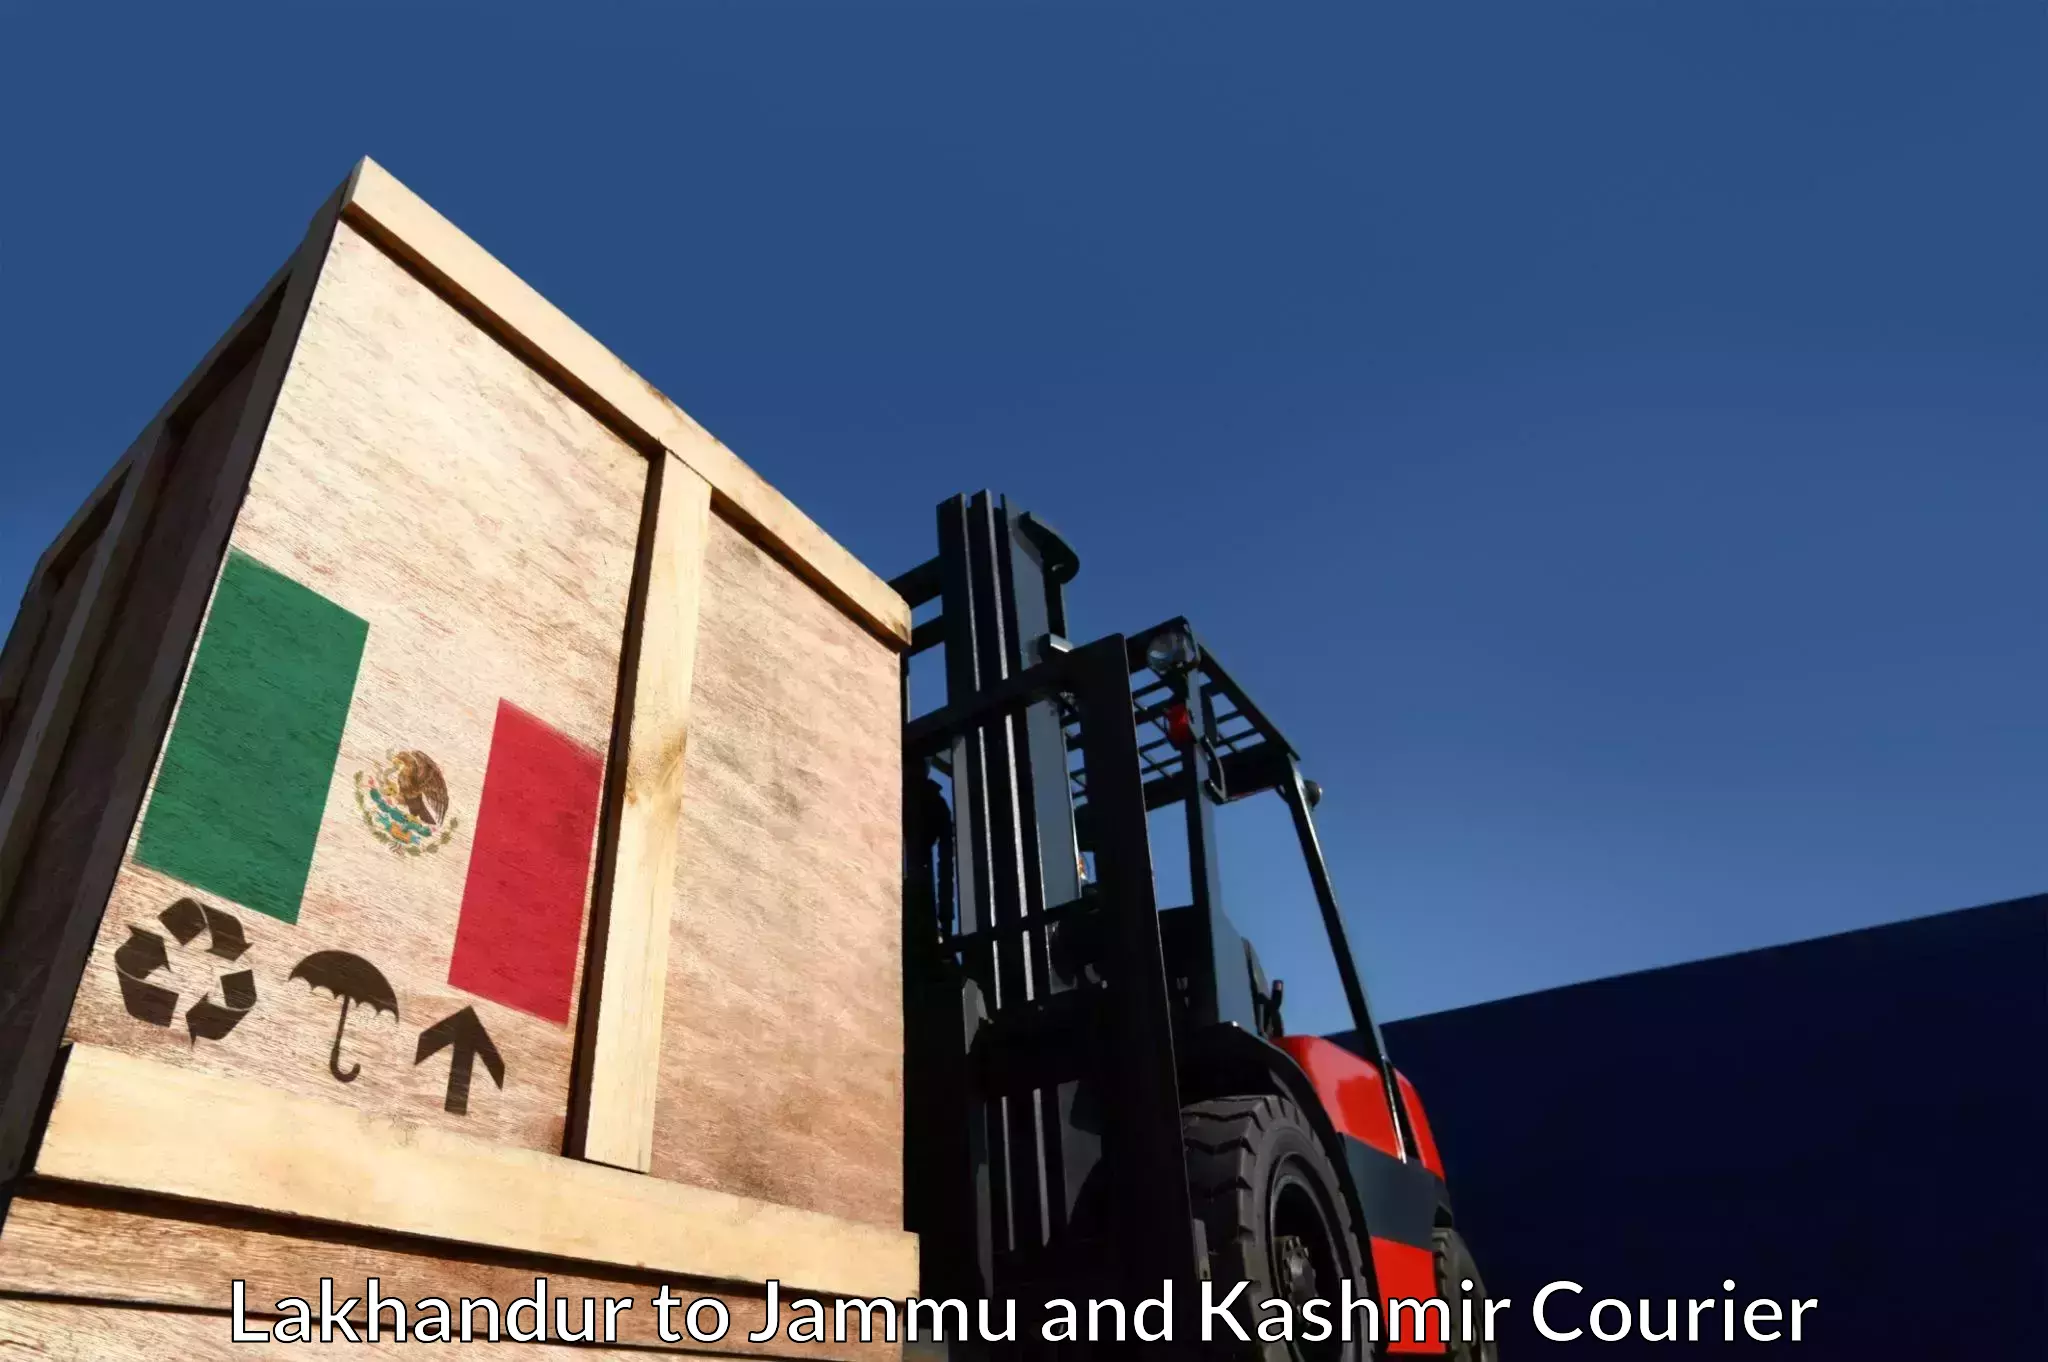 Reliable logistics providers Lakhandur to Jammu and Kashmir